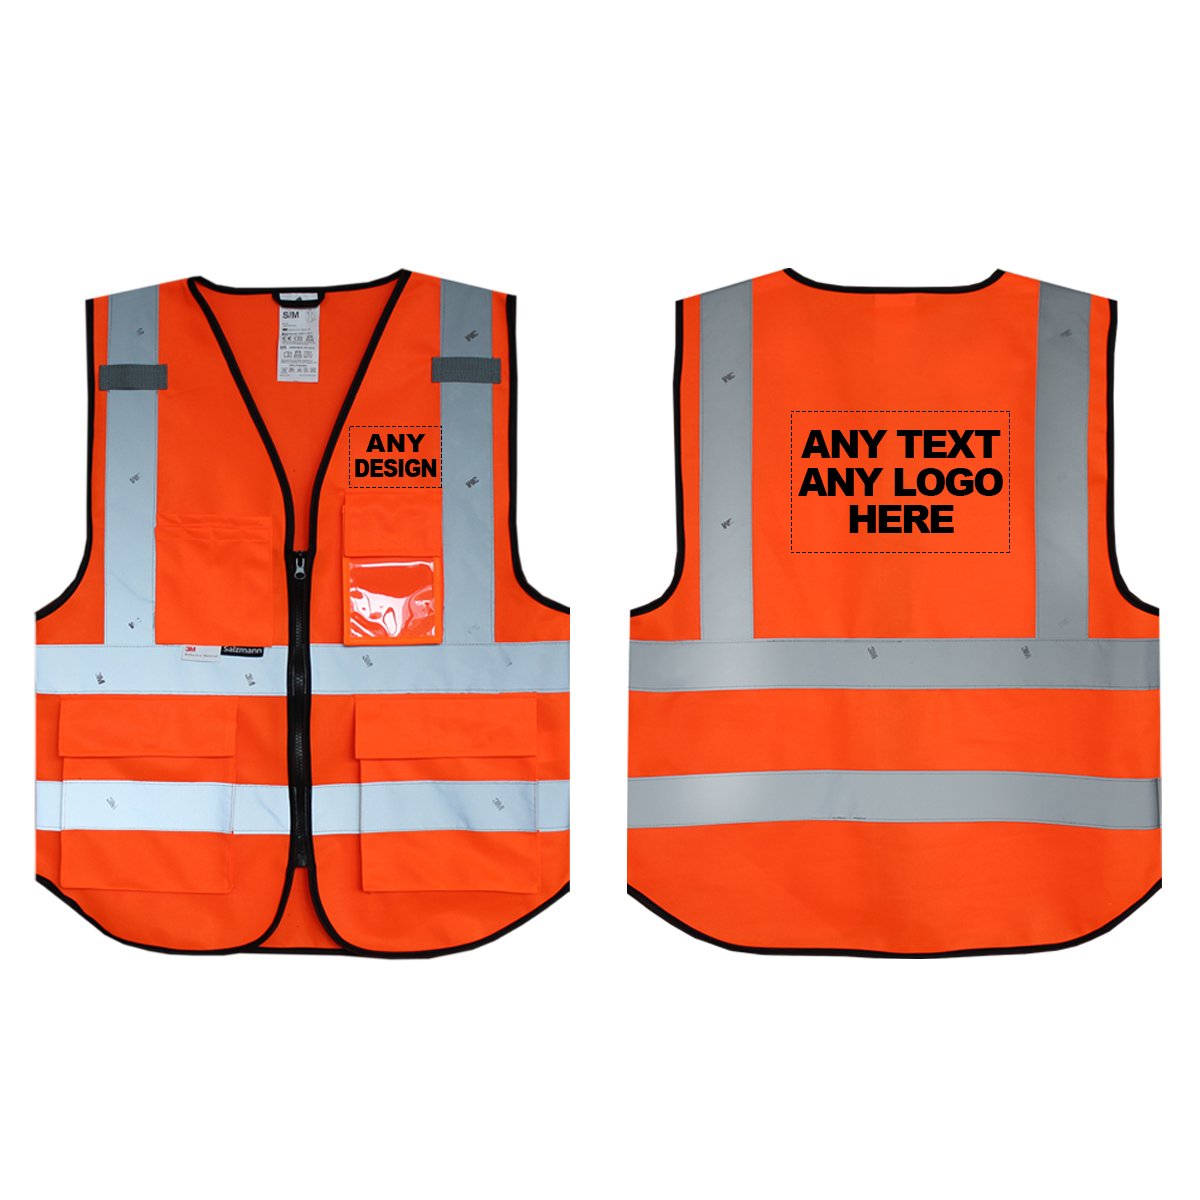 Vorder- und Rückseite einer orangefarbenen Warnweste mit dem Aufdruck "Any text, any logo here"